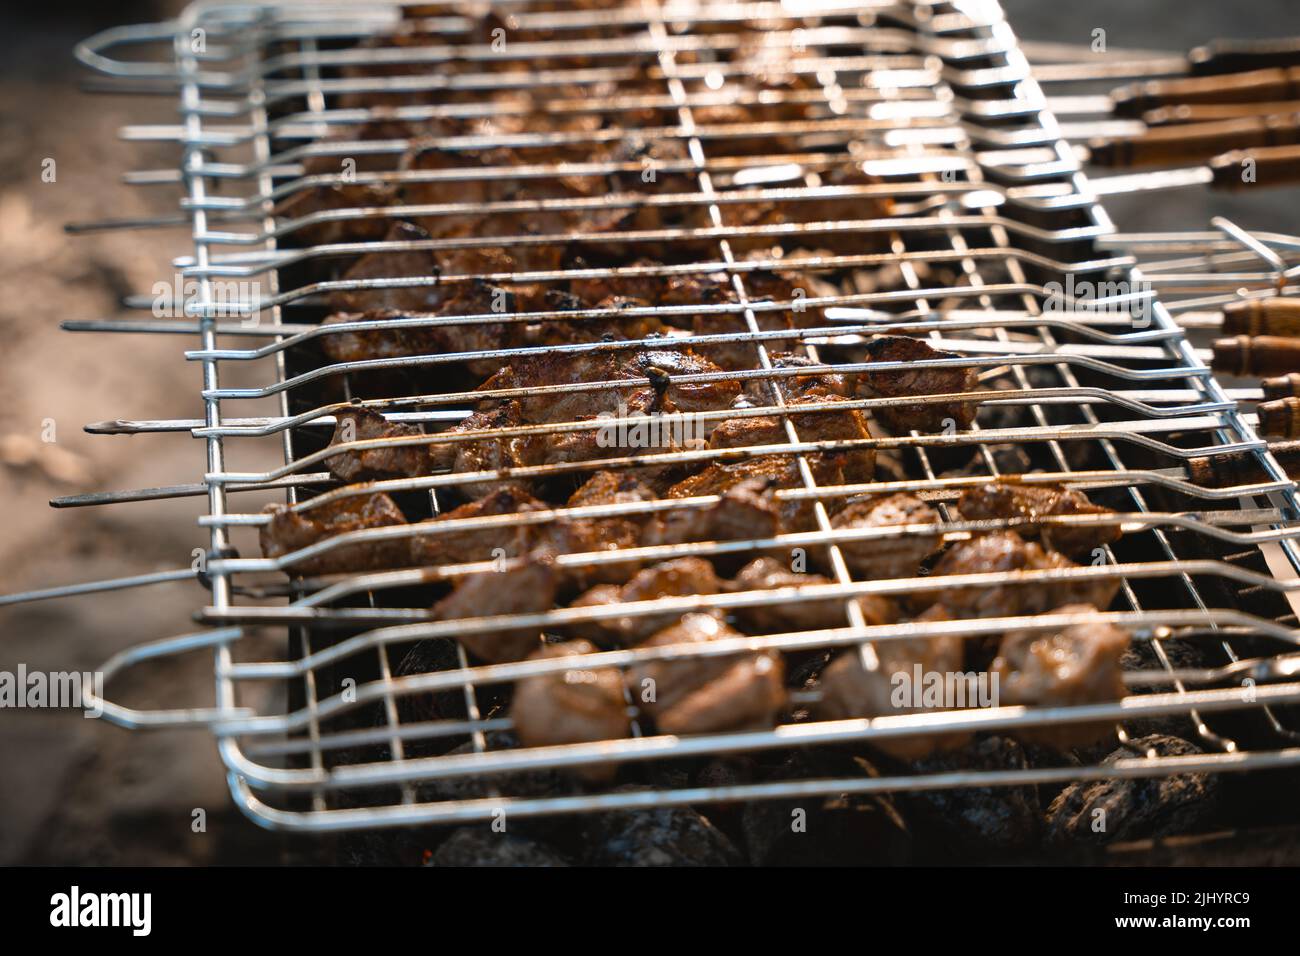 Le gril est utilisé lors d'un pique-nique pour préparer de la viande Banque D'Images